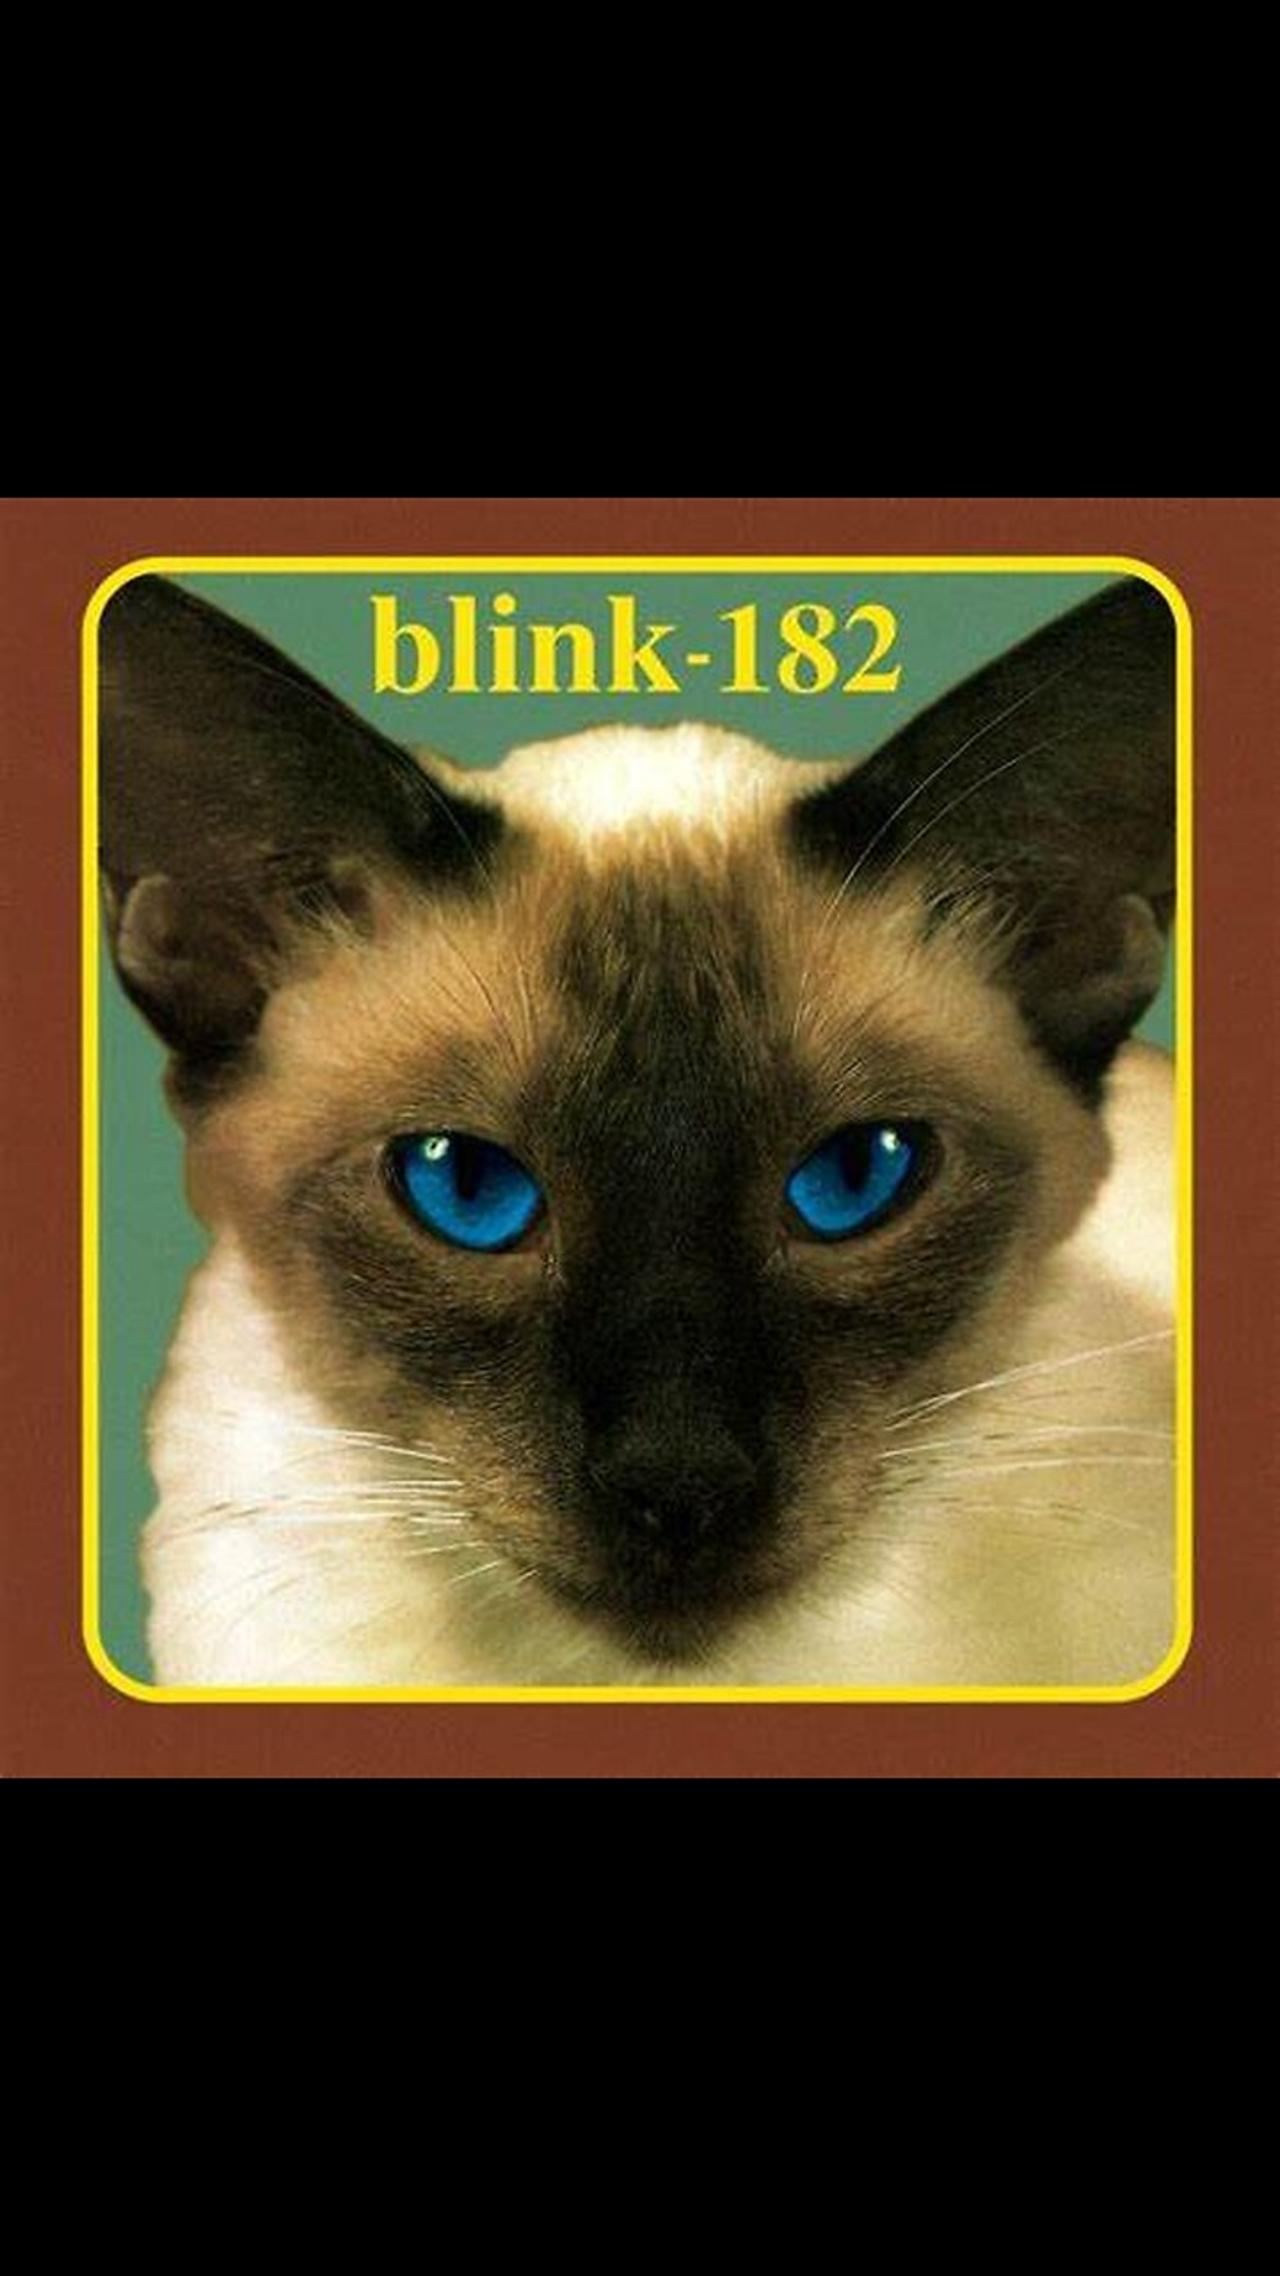 Blink-182 - Cheshire cat